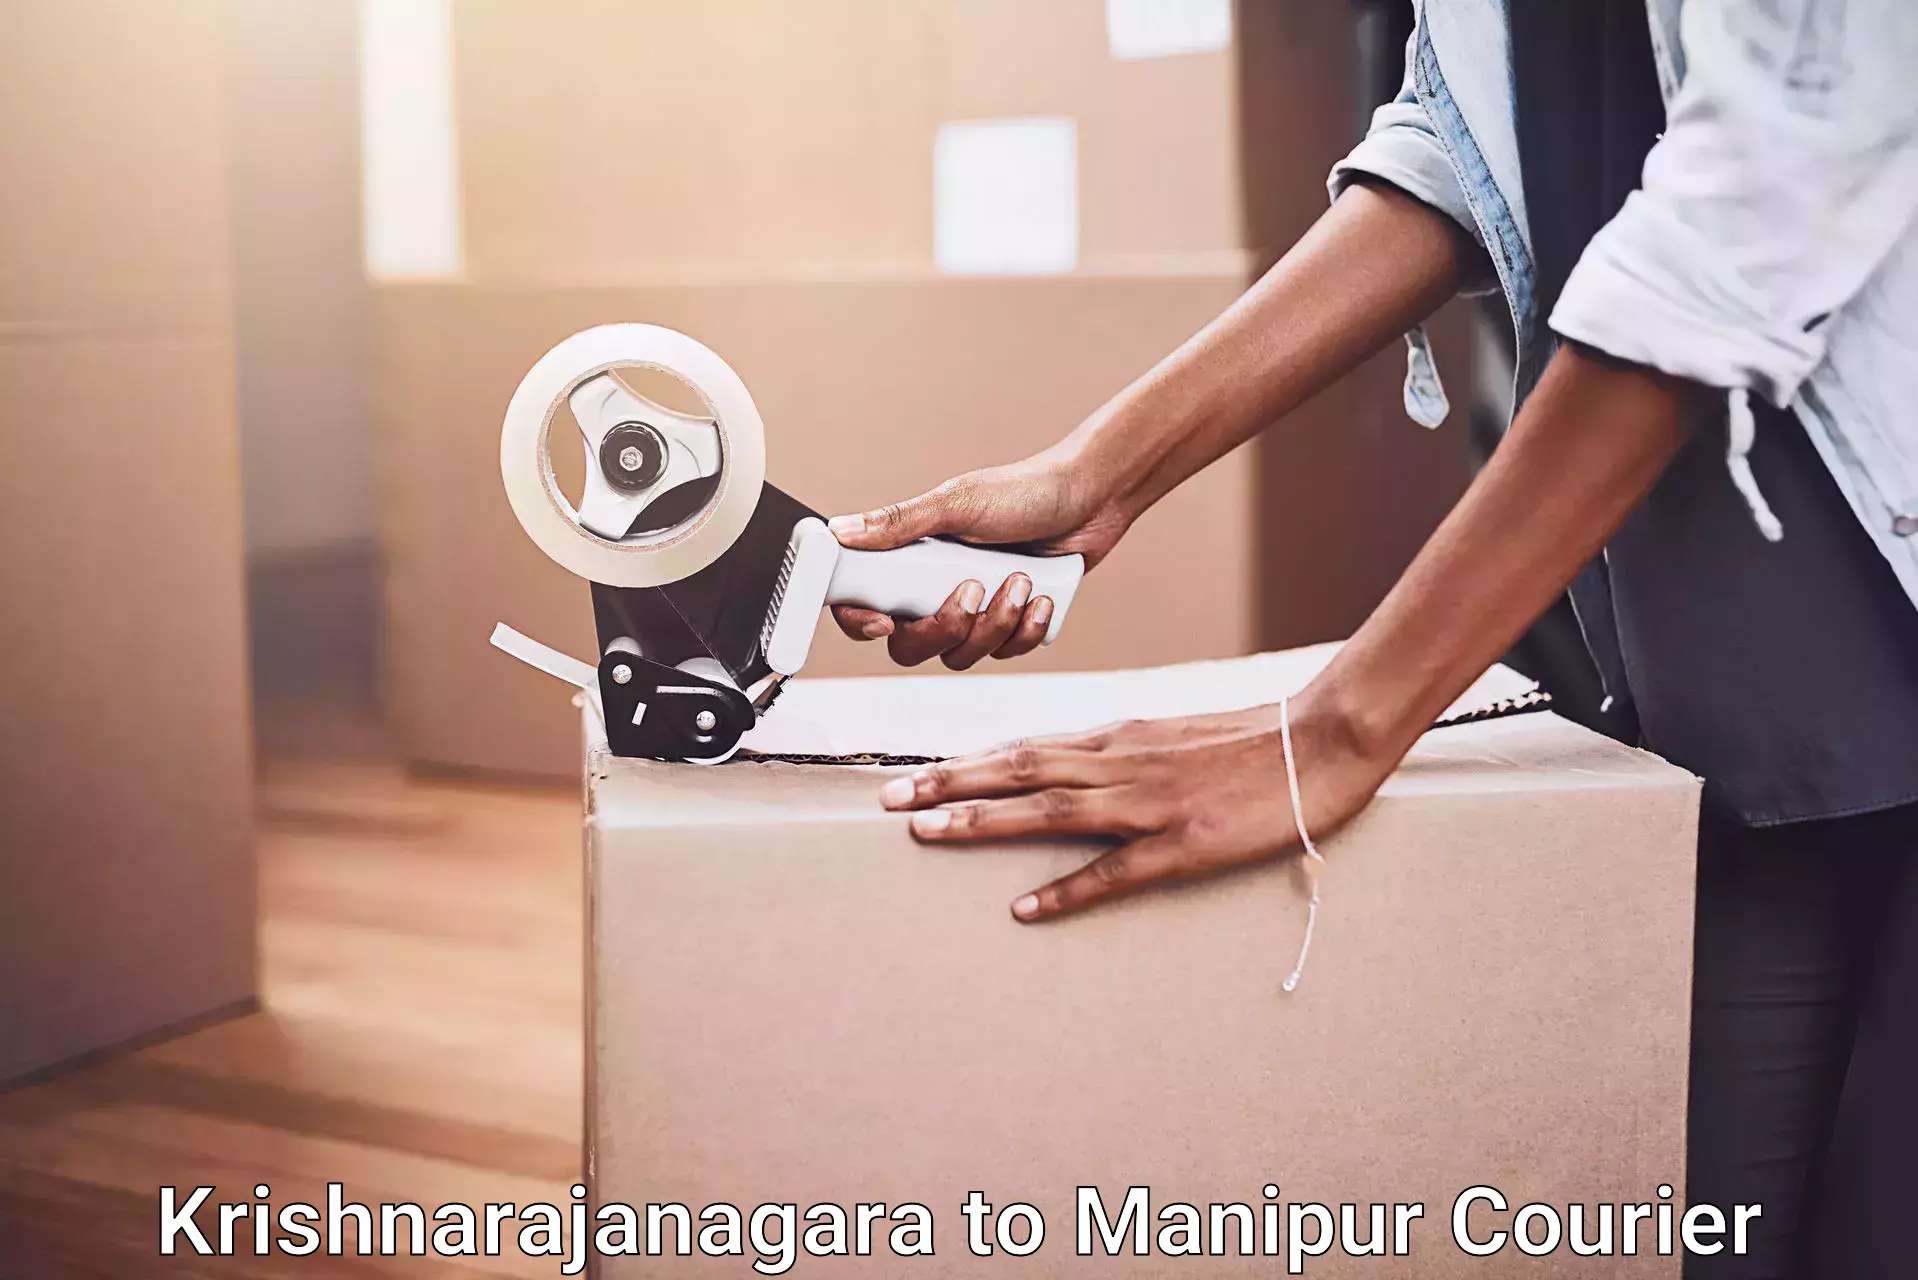 Furniture moving services Krishnarajanagara to Manipur